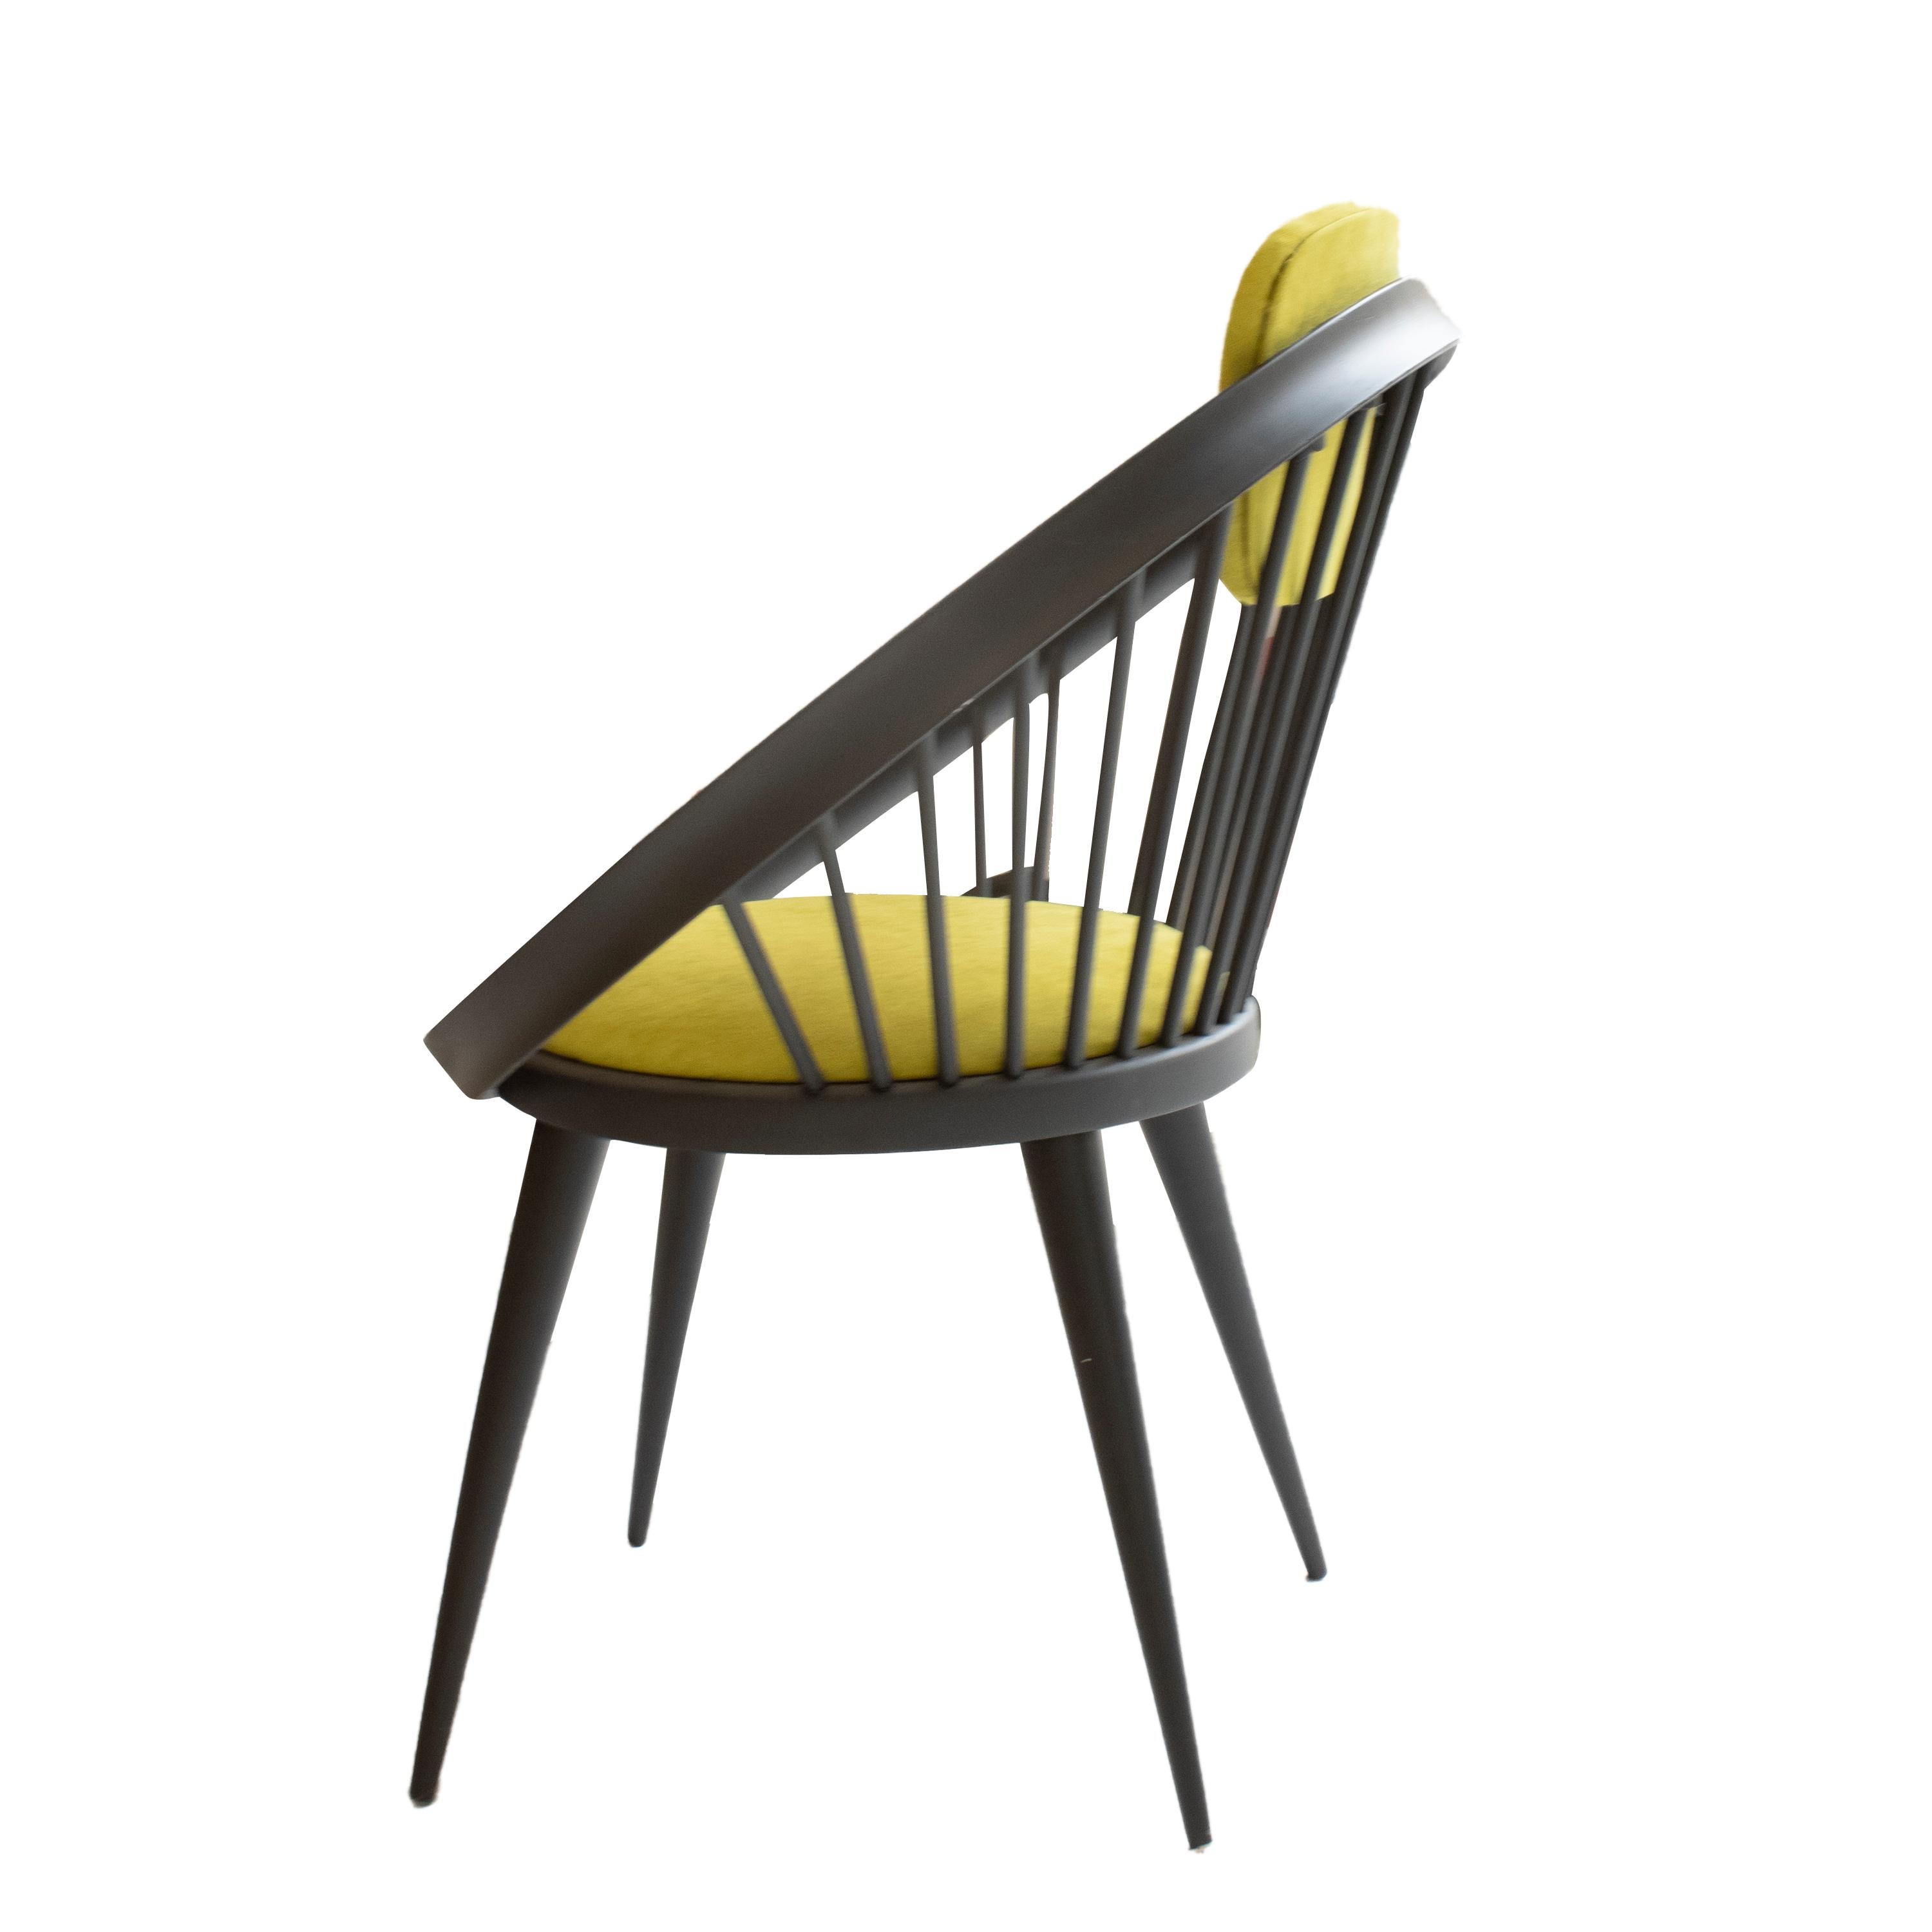 Zwei Sessel, die in den 1960er Jahren vom schwedischen Designer Yngve Ekström entworfen und von seiner eigenen Marke Swedese hergestellt wurden. Der Sessel ist aus schwarz lackiertem Massivholz gefertigt, Sitzfläche und Rückenlehne sind mit grünem